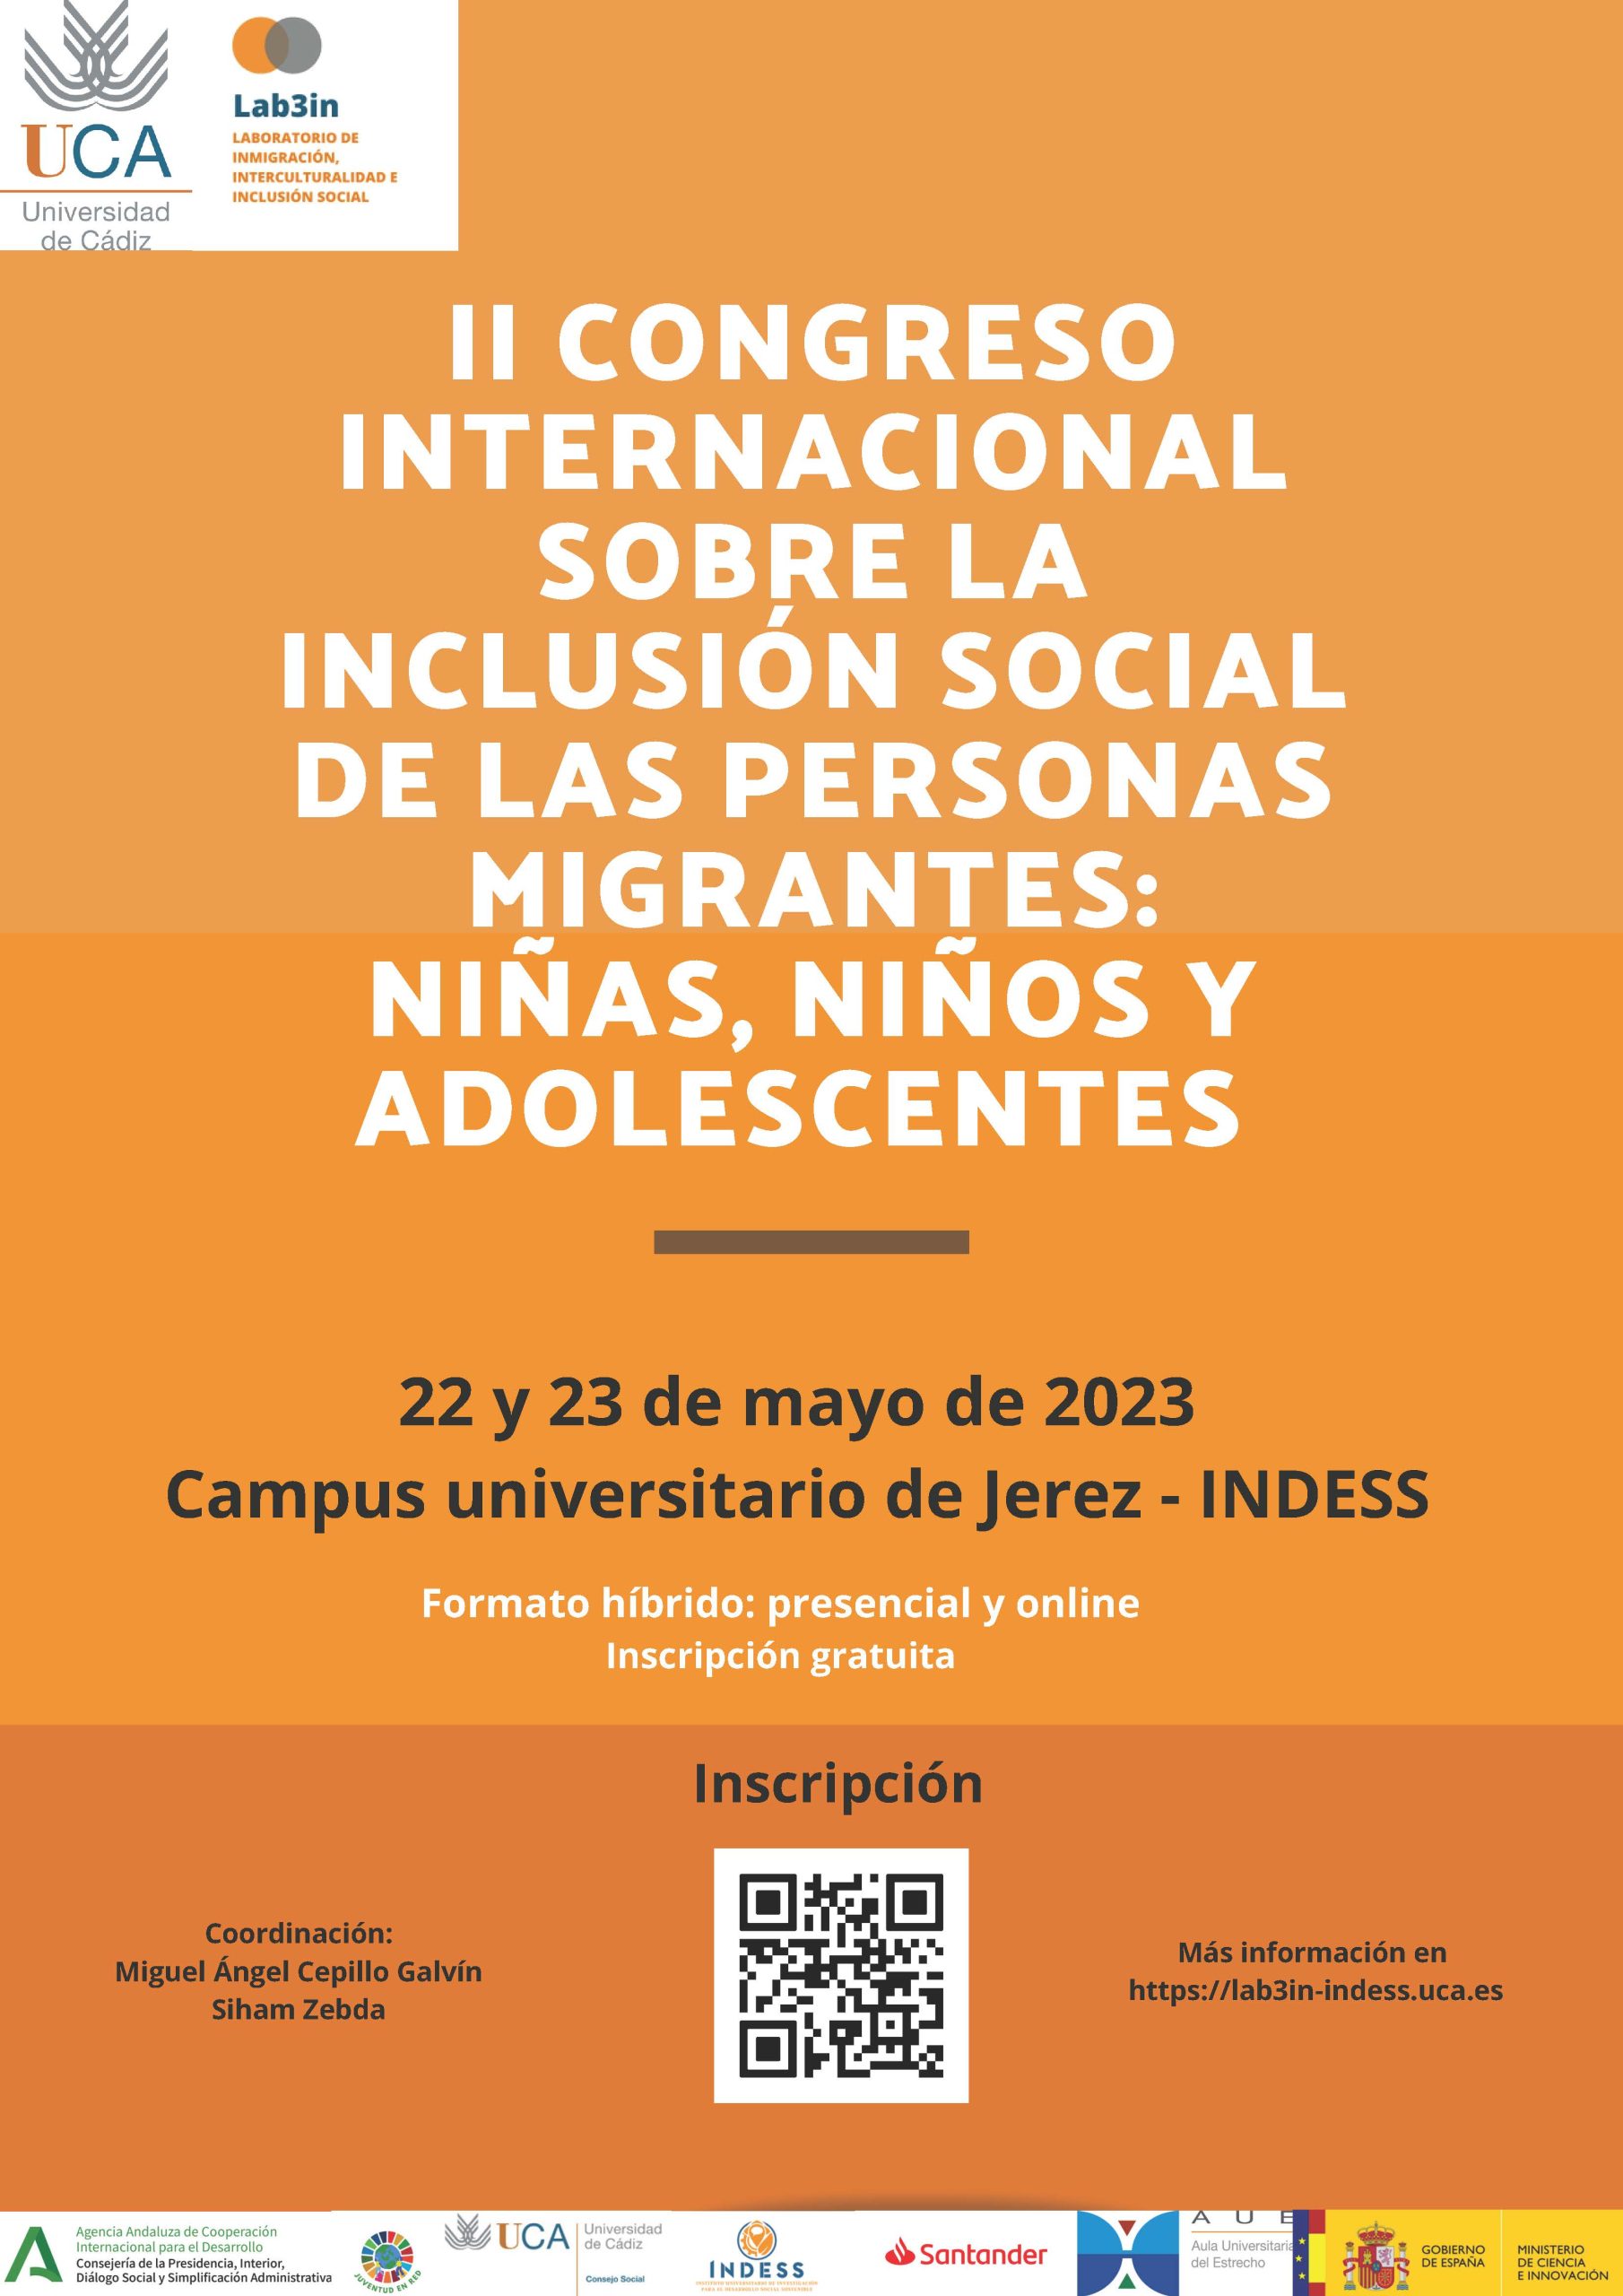 “II Congreso internacional sobre la inclusión social de las personas migrantes: niñas, niños y adolescentes”